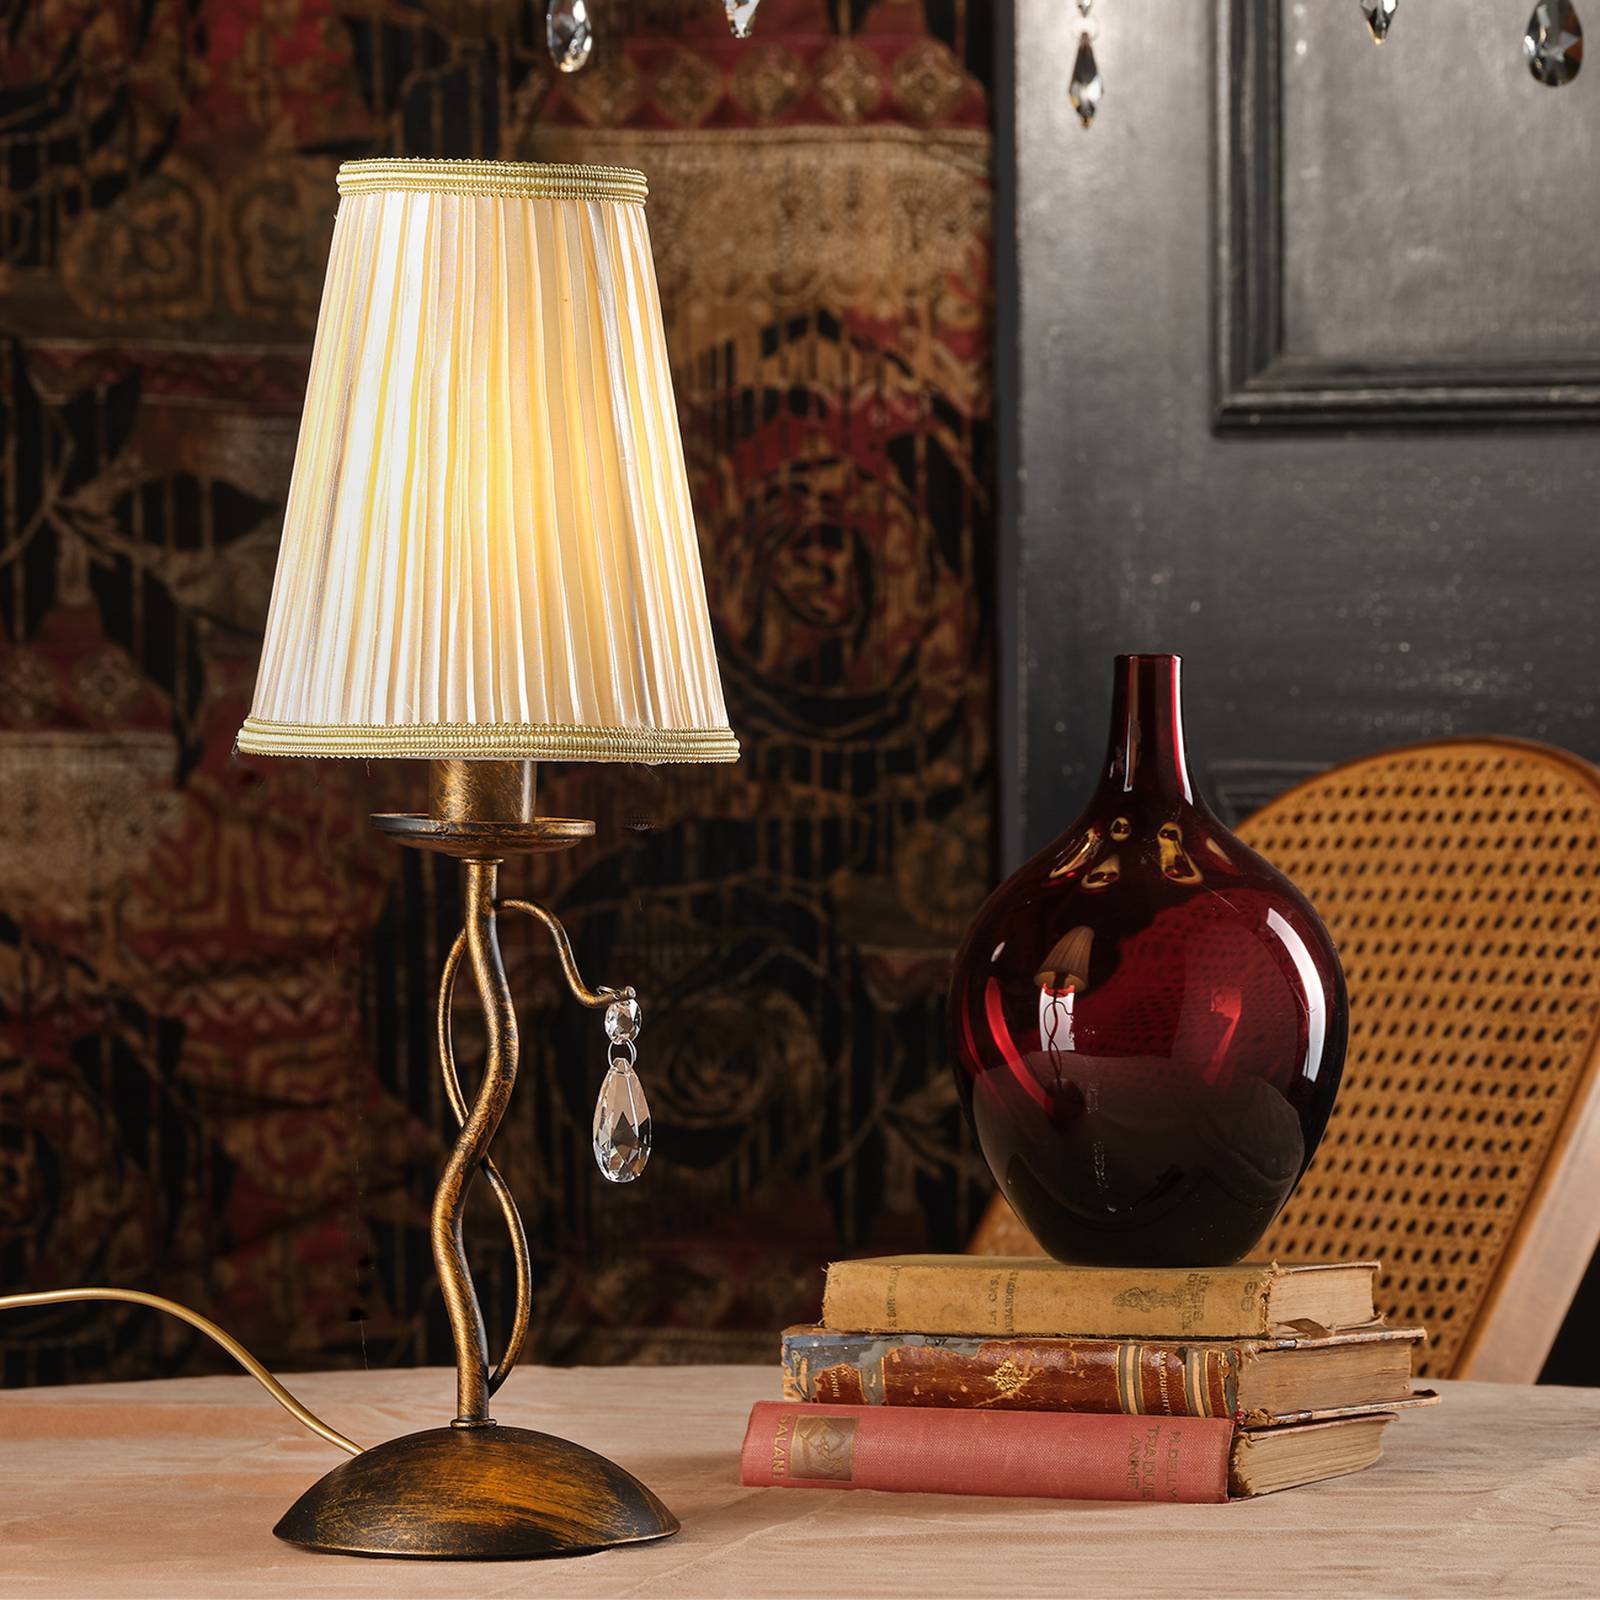 Onli delia asztali lámpa, bronz színű, vas, magasság 42 cm, ø 15 cm